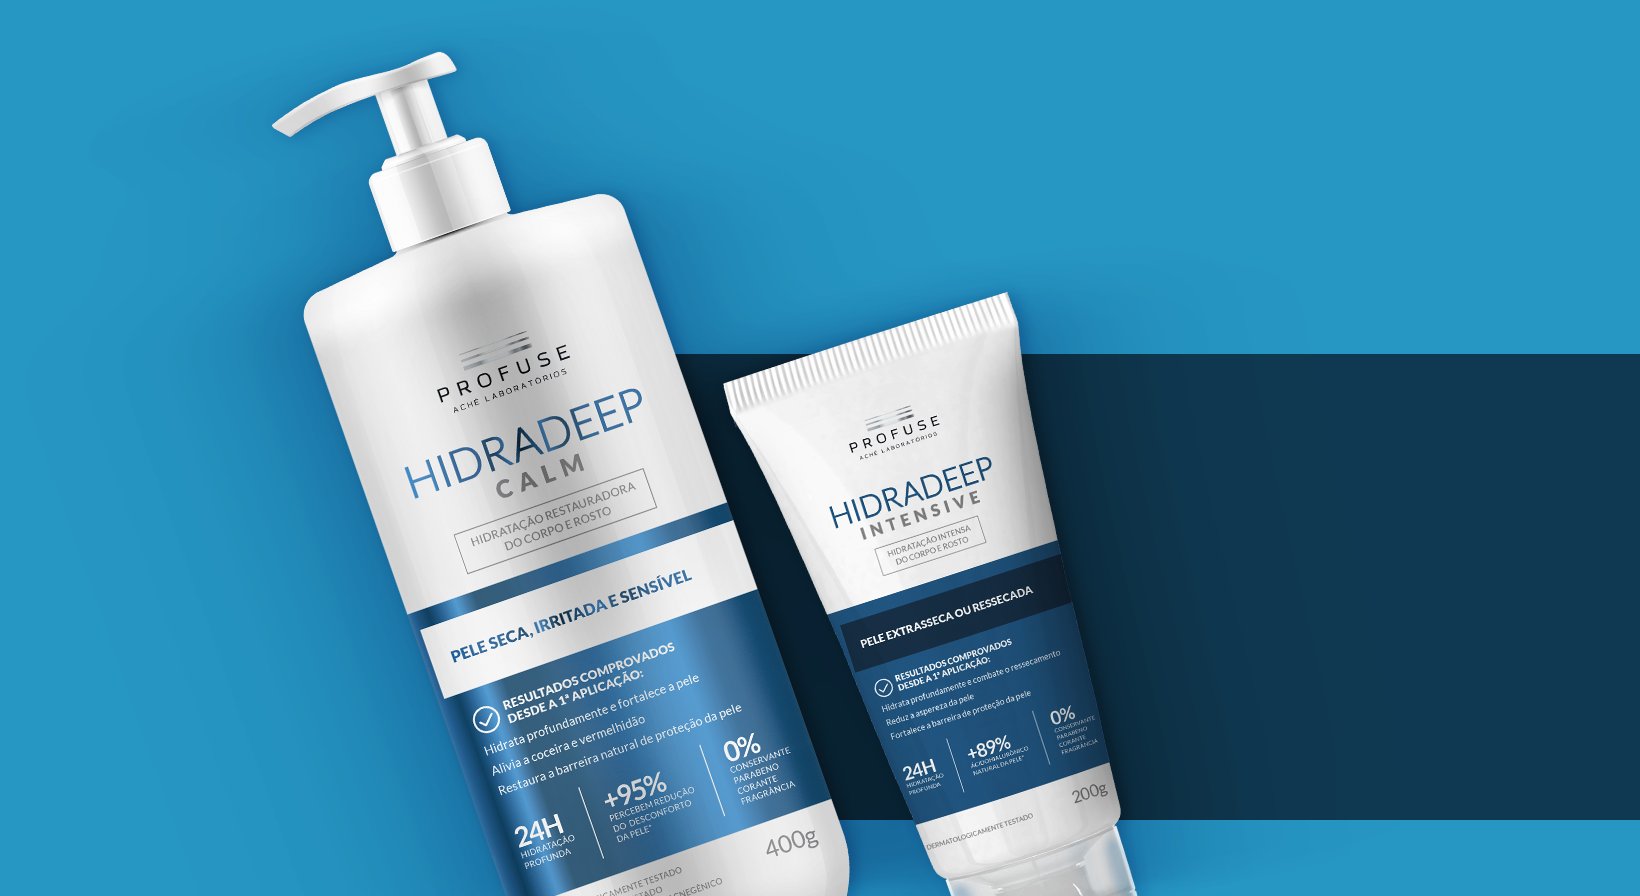  Imagem mostra os produtos Hidradeep Calm e Hidradeep Intensive em um fundo azul 